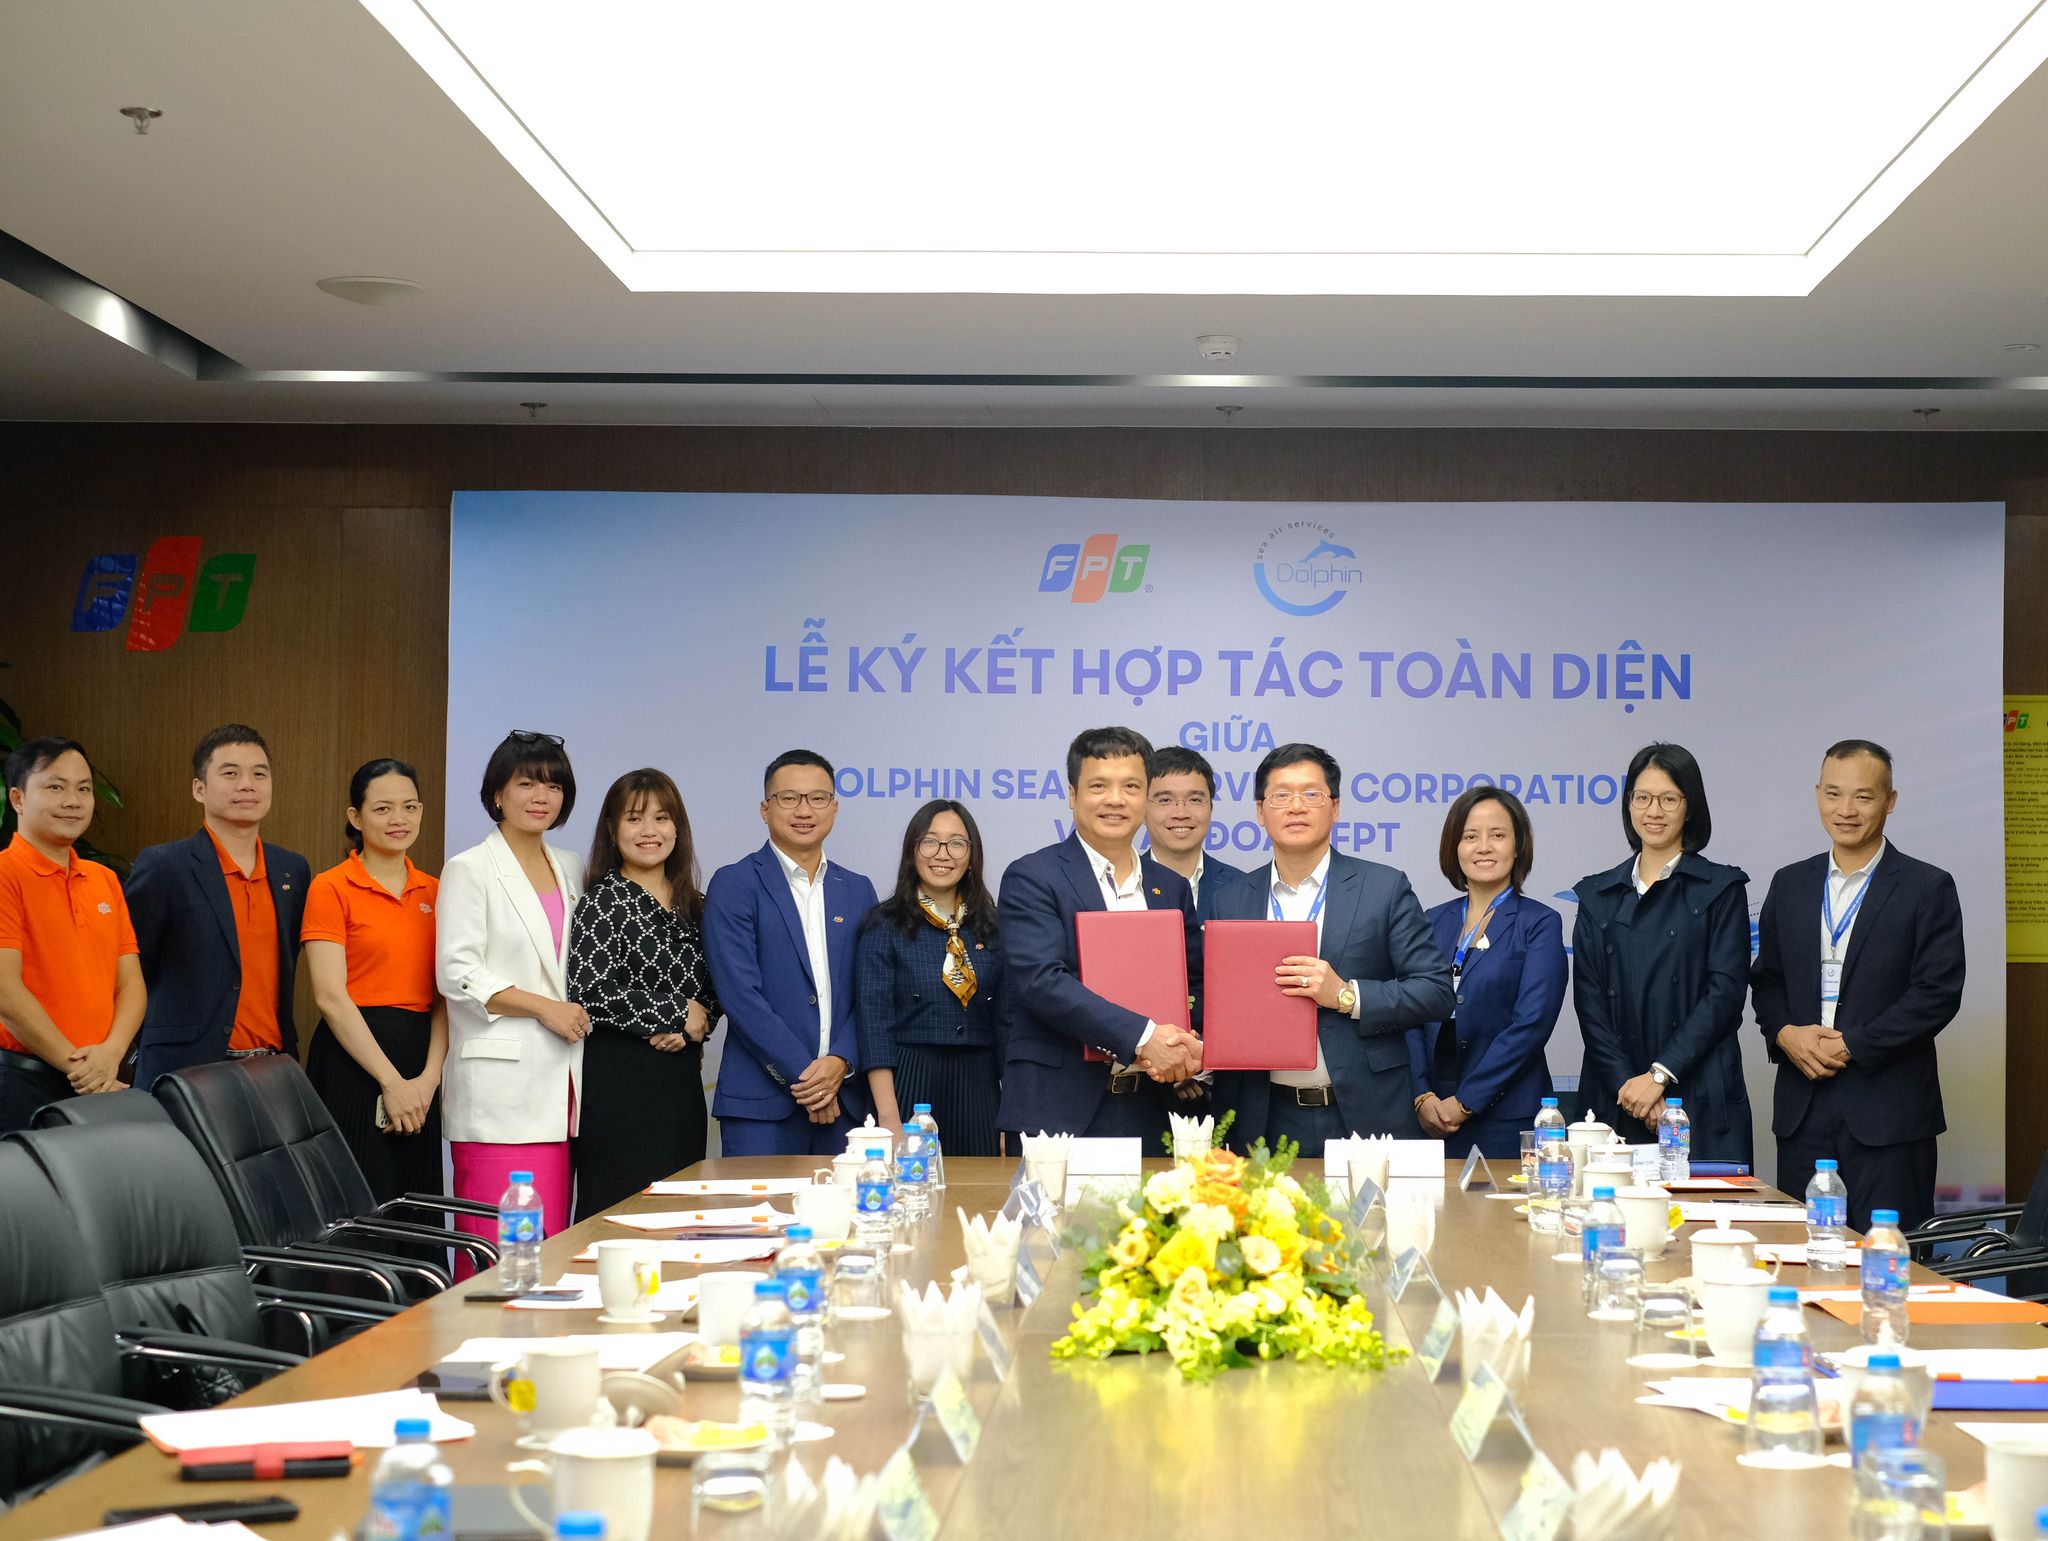 Dolphin Sea Air Services Corporation ký kết hợp tác chiến lược với FPT